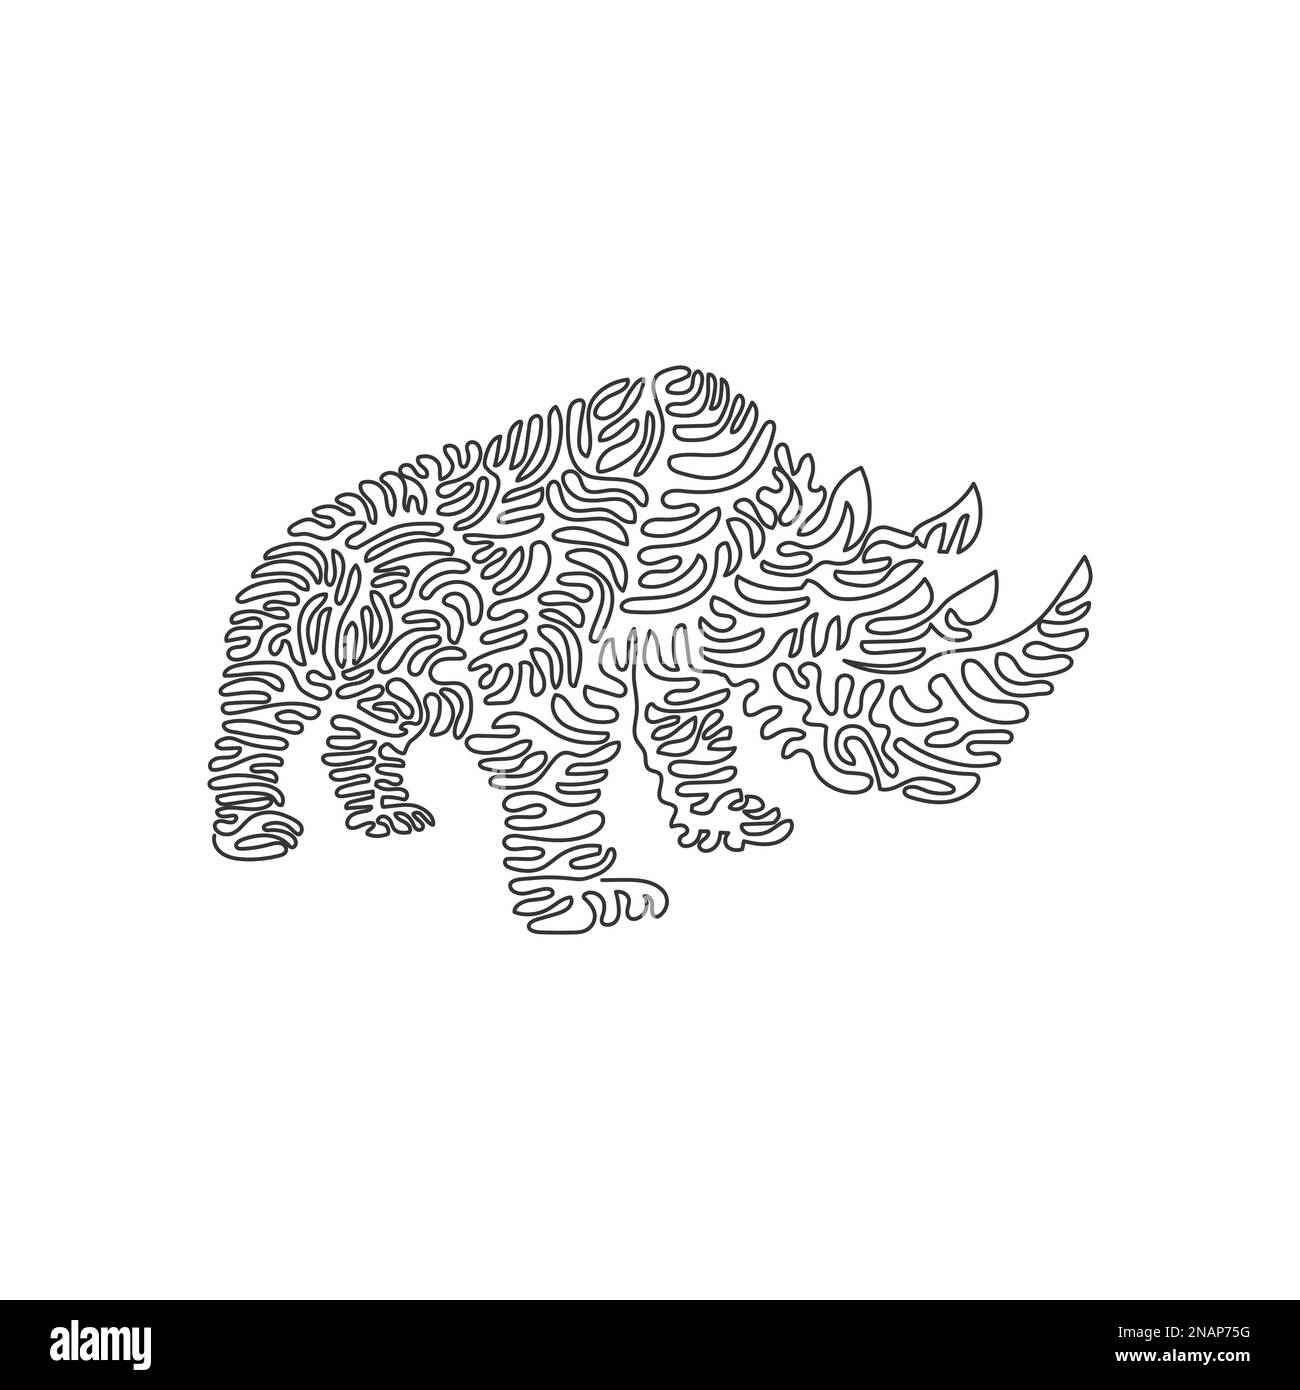 Un seul curly une ligne de dessin d'herbivores rhinocéros art abstrait Dessin de ligne continue dessin vectoriel illustration de deux cornes exotiques rhinocéros Illustration de Vecteur